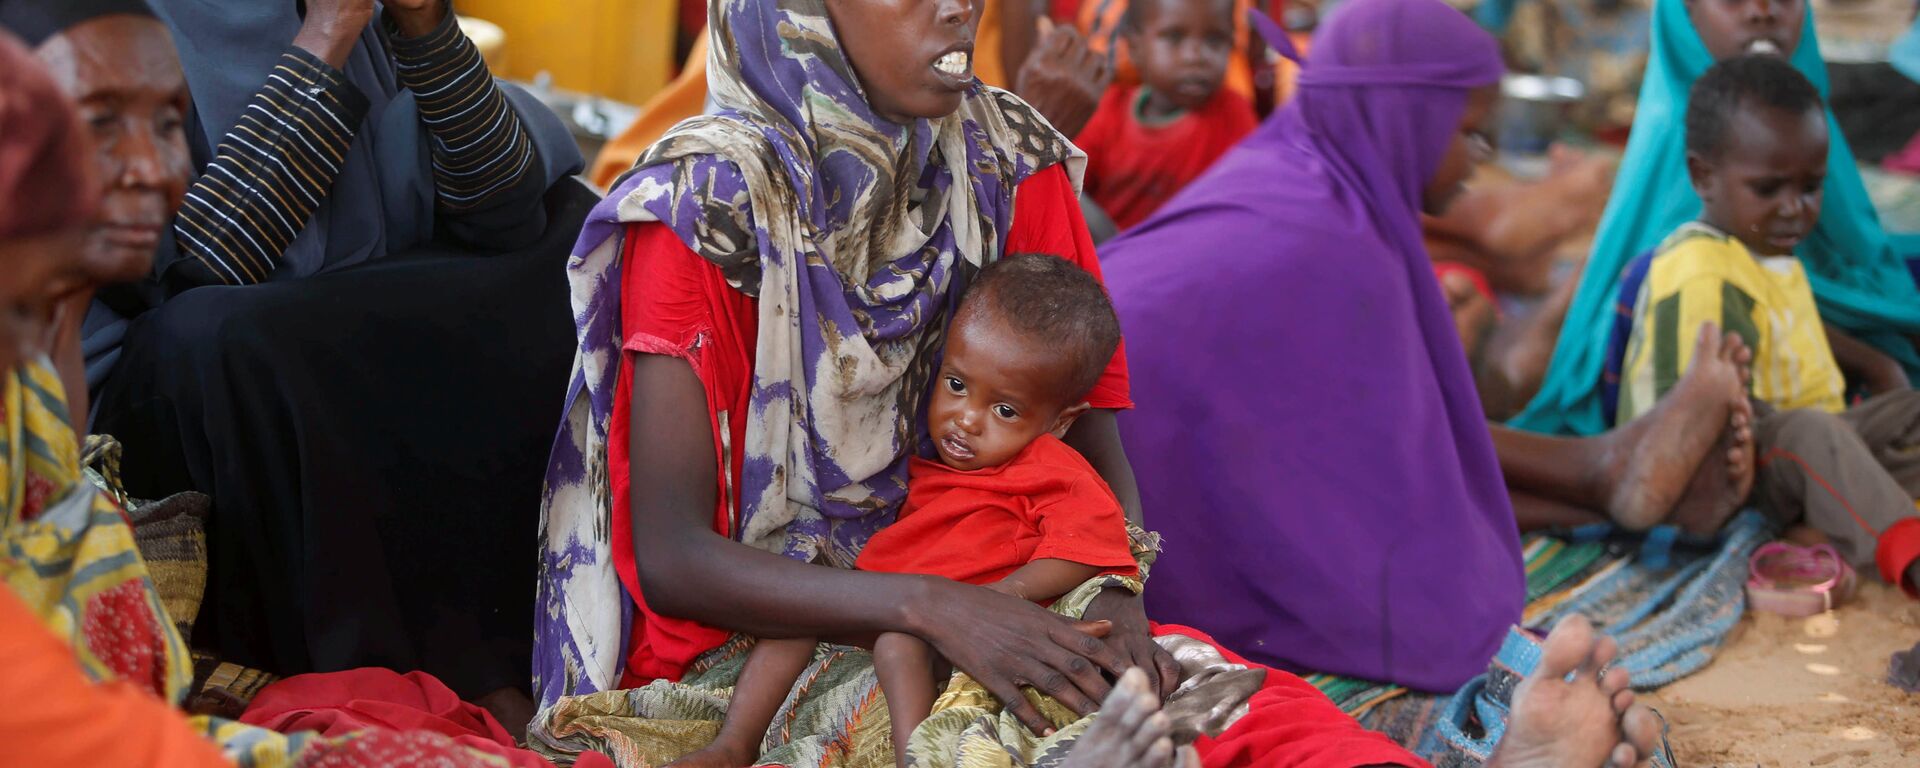 Женщины с детьми в лагере в столице Сомали городе Могадишо - Sputnik Latvija, 1920, 13.03.2021